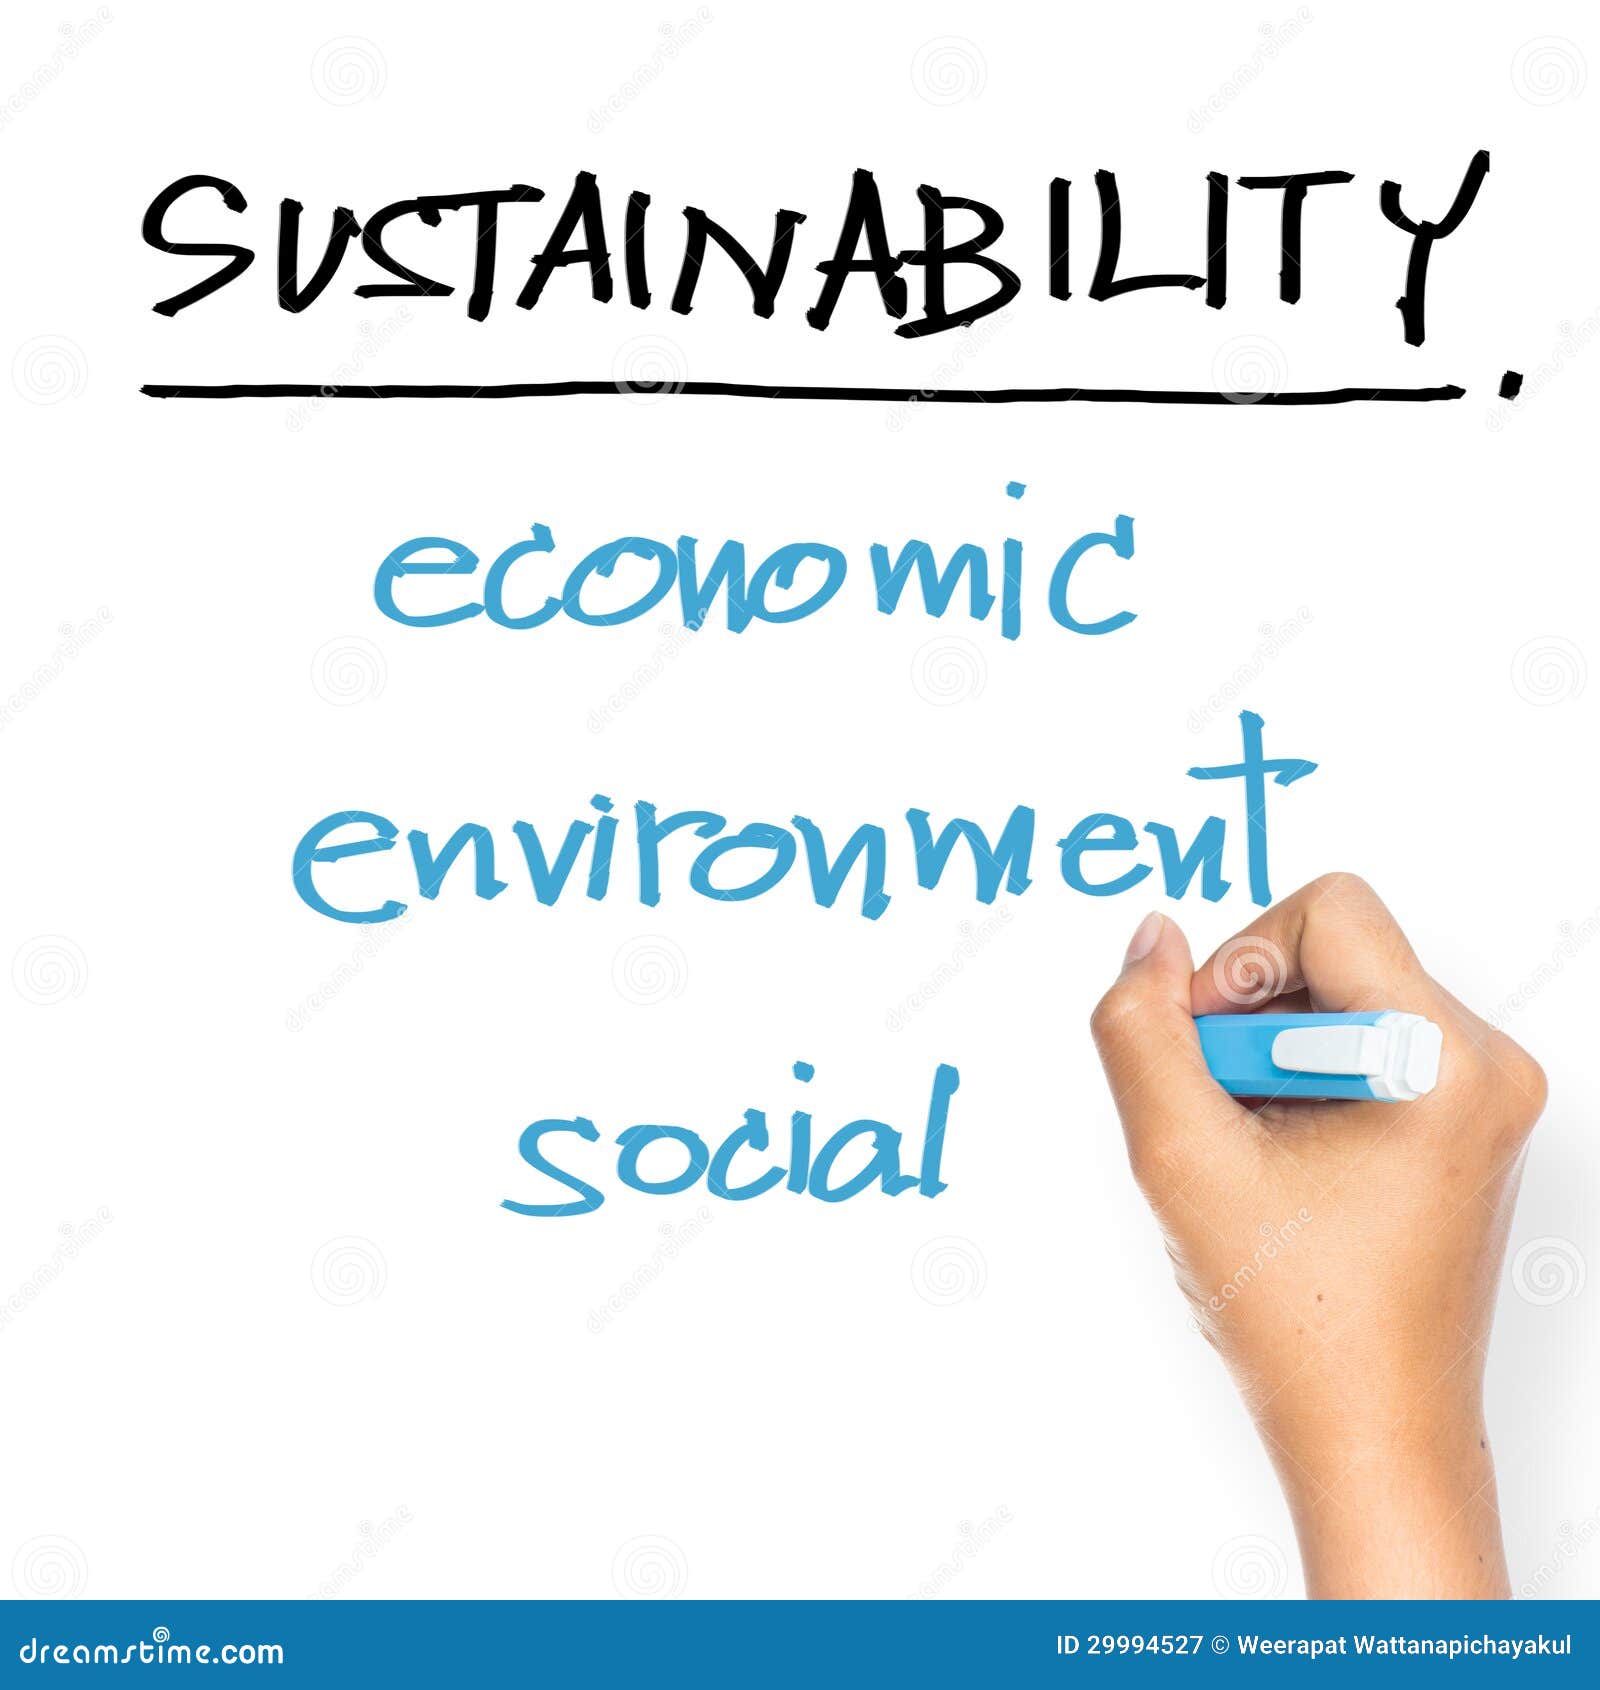 sustainability on whiteboard